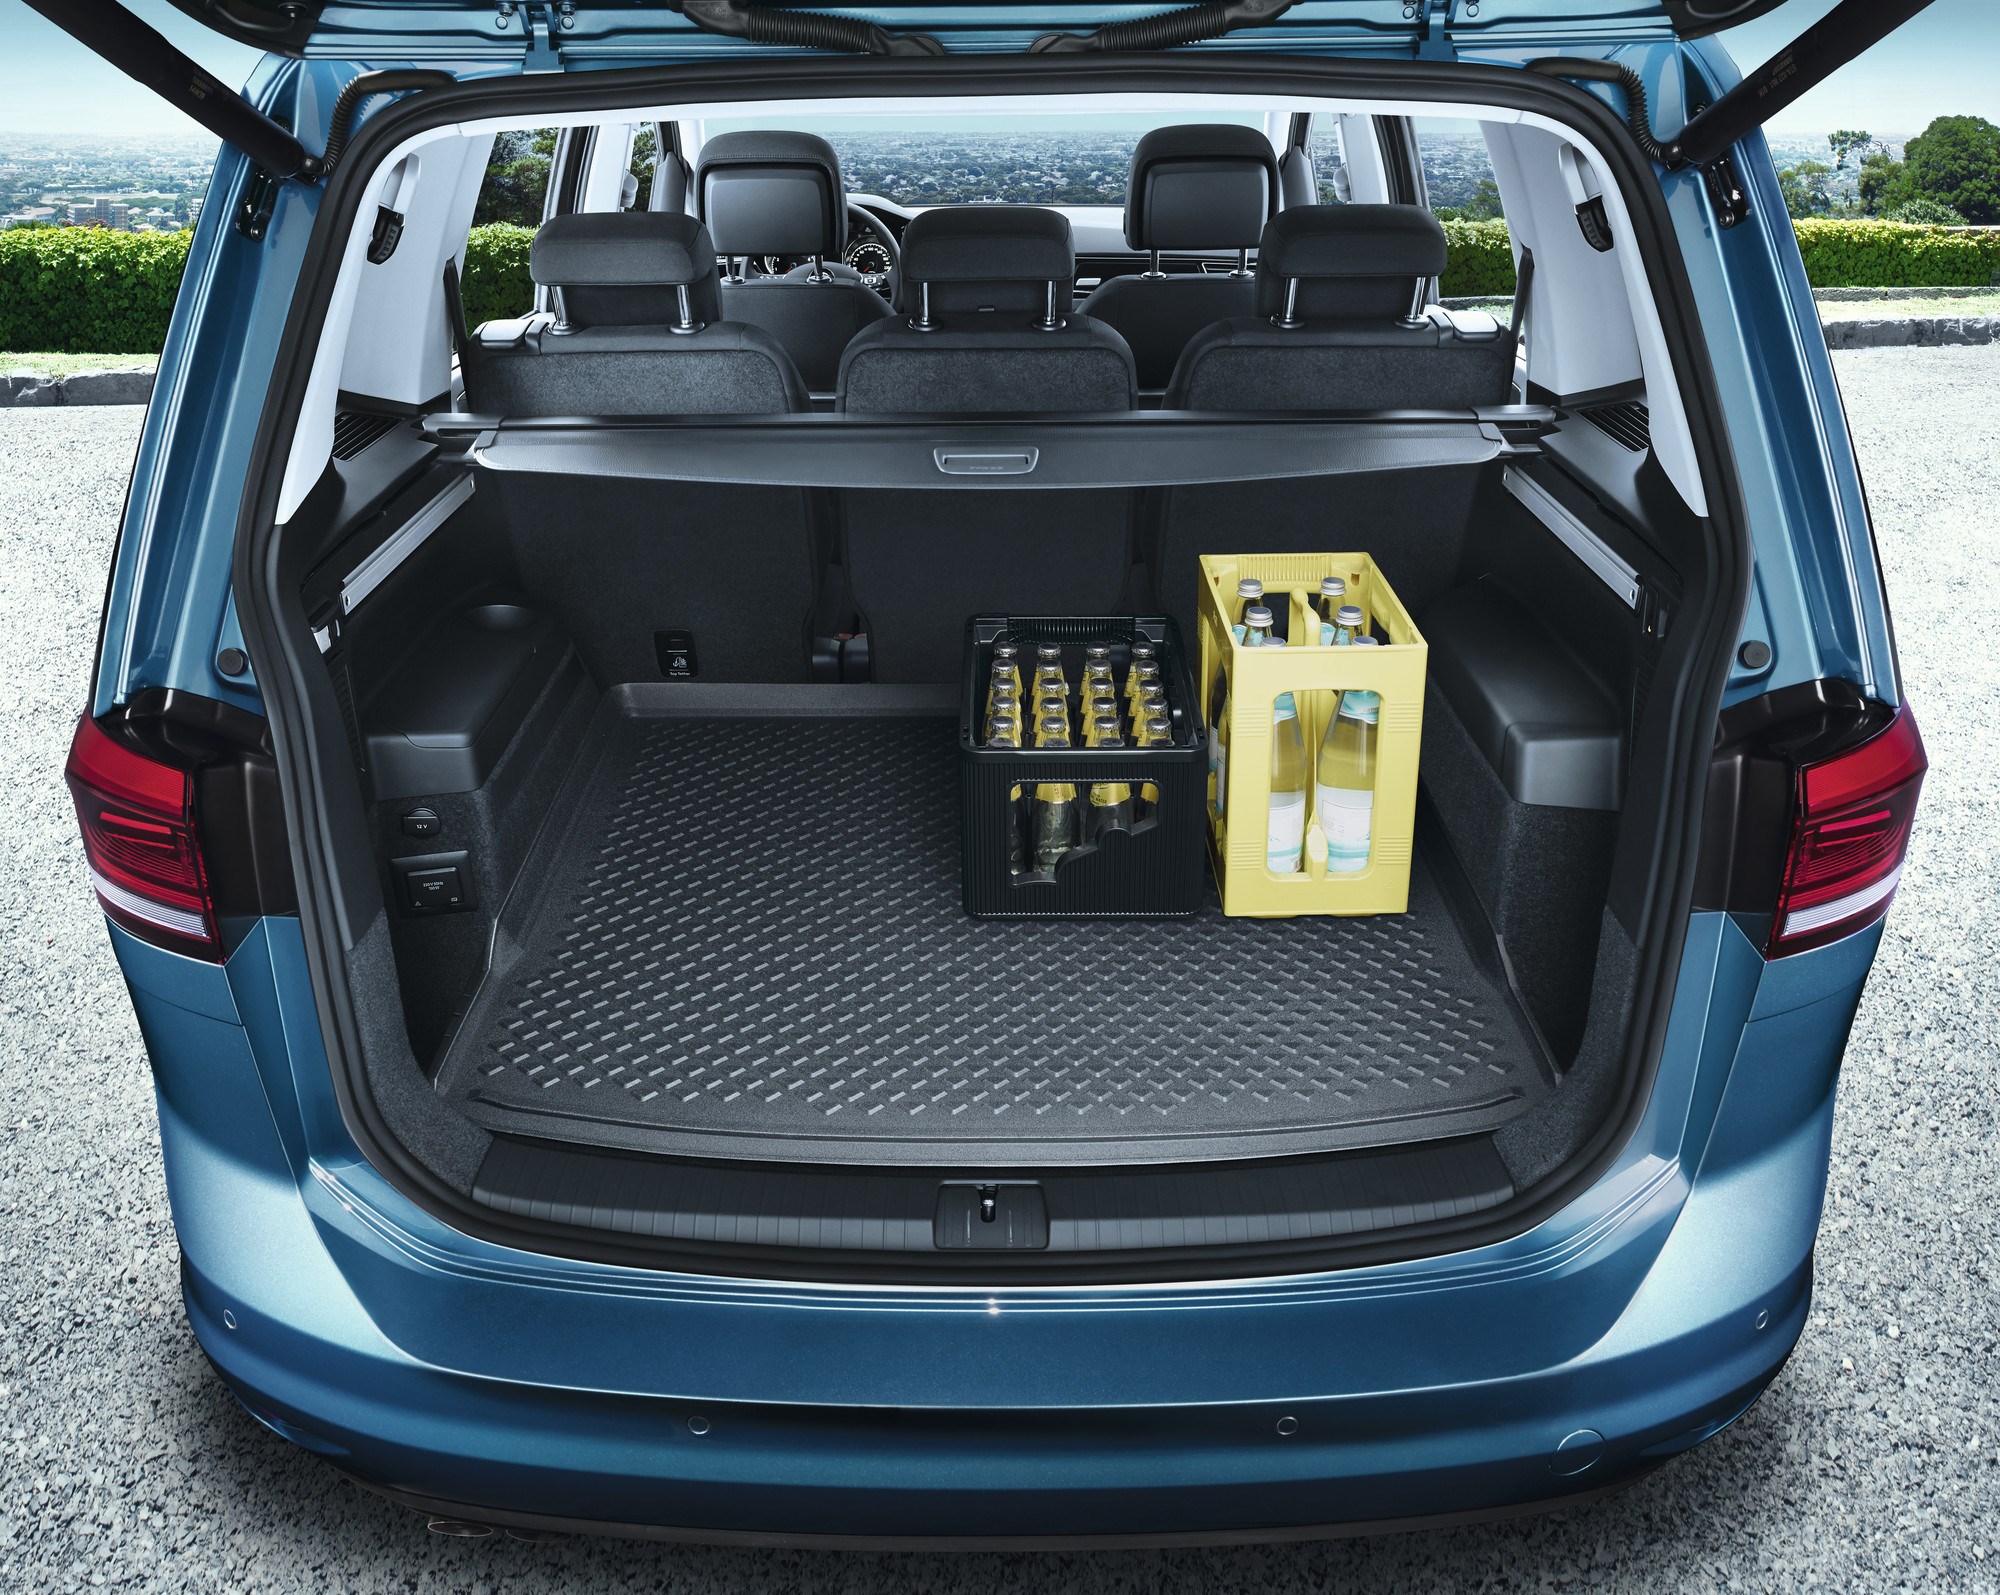 Zubehör Original | ahw-shop und Gepäckraumeinlage - (MQB) VW II Ersatzteile Touran Kofferraum 5-Sitzer VW Einlage 7-Sitzer AUDI